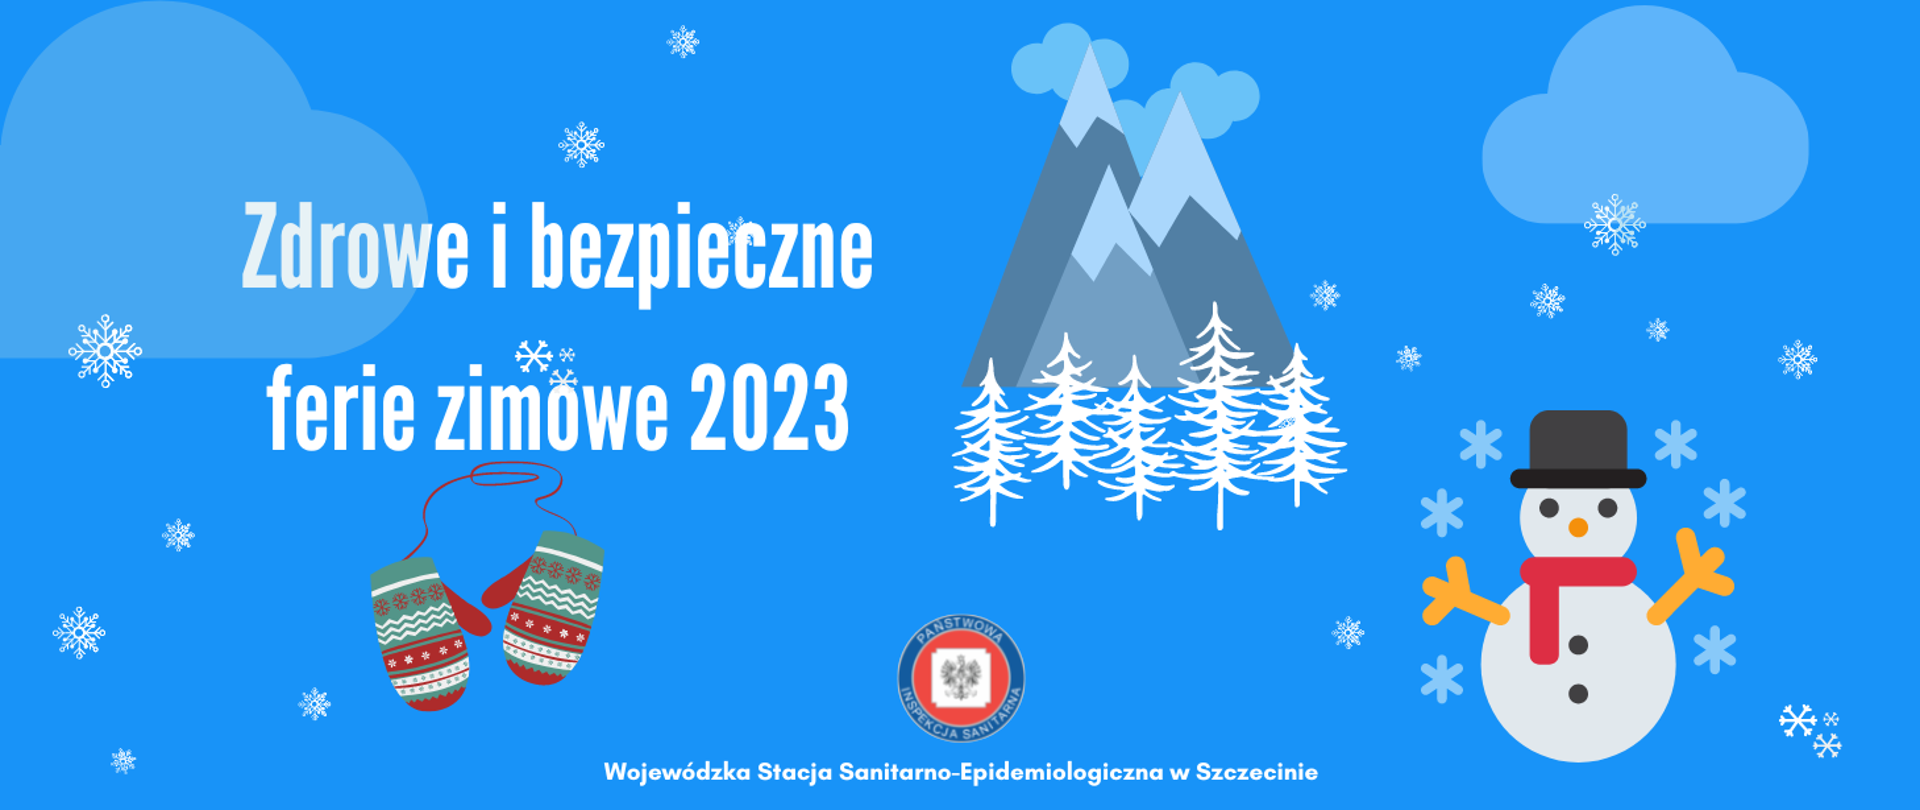 Grafika przedstawia napis Zdrowe i bezpieczne ferie zimowe 2023 w otoczeniu ilustracji padającego śniegu, bałwanka, ośnieżonych gór i choinek.